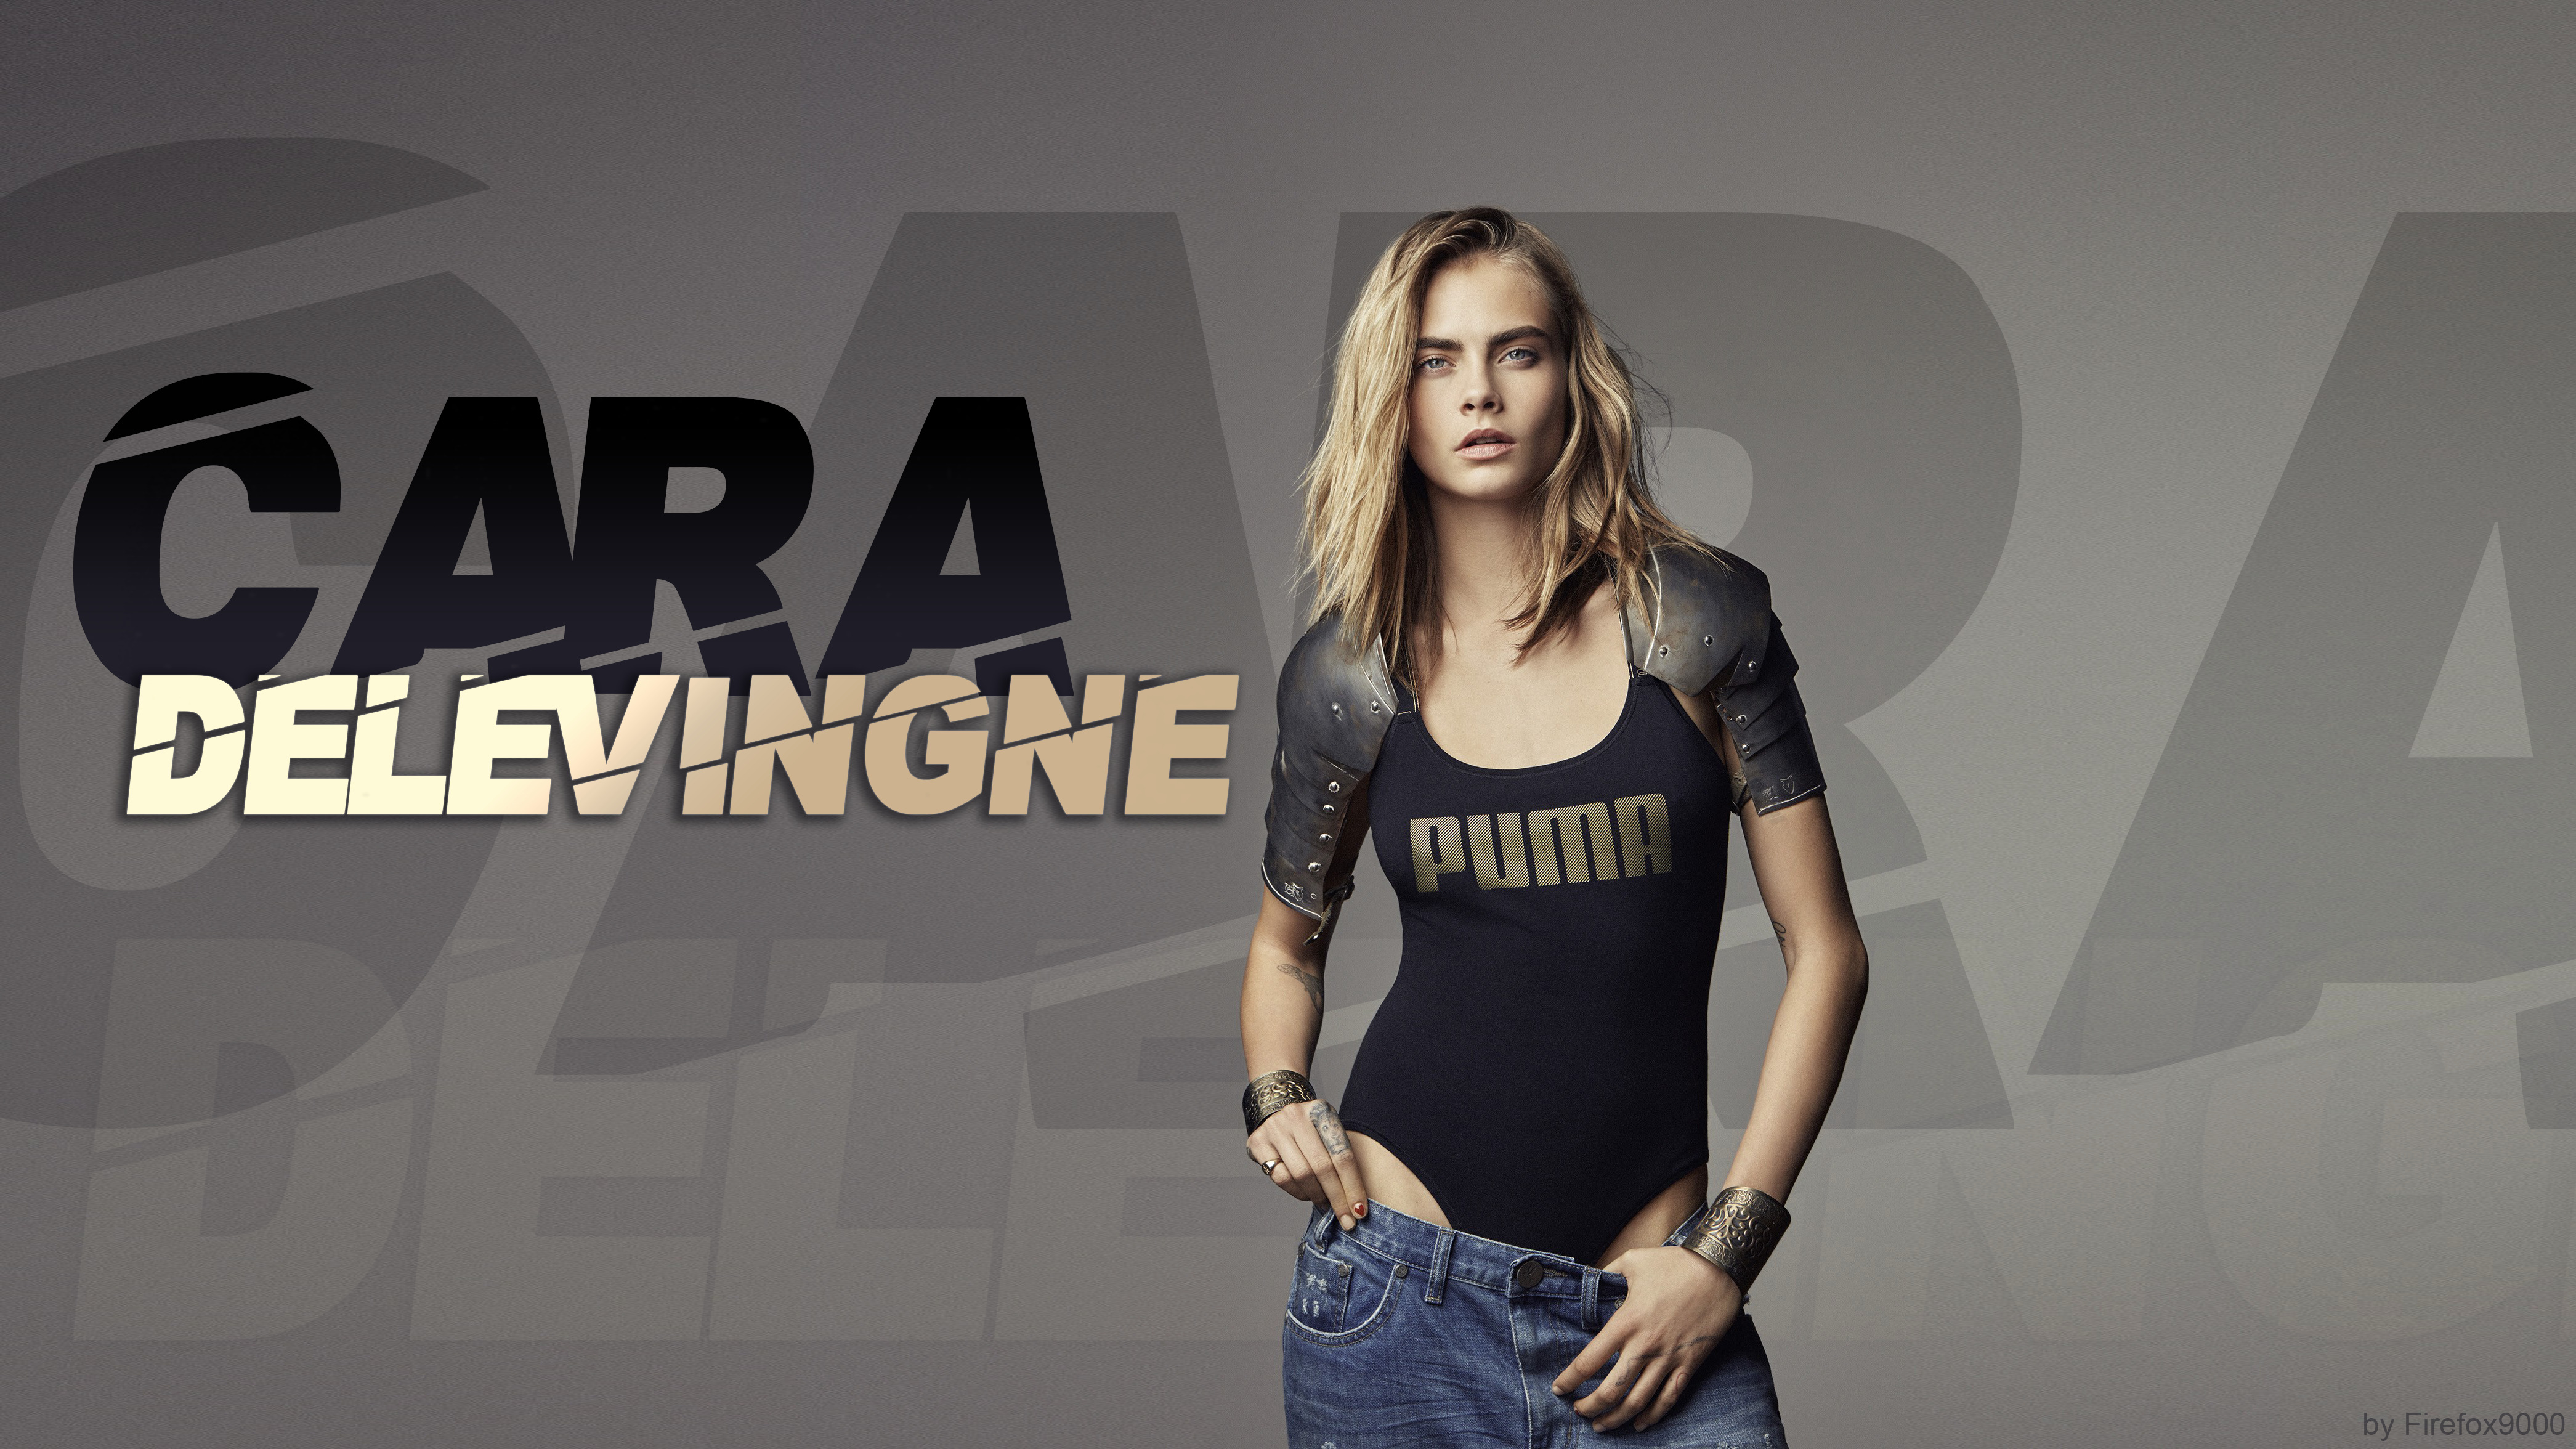 Cara Delevingne Puma Actress 4182x2352